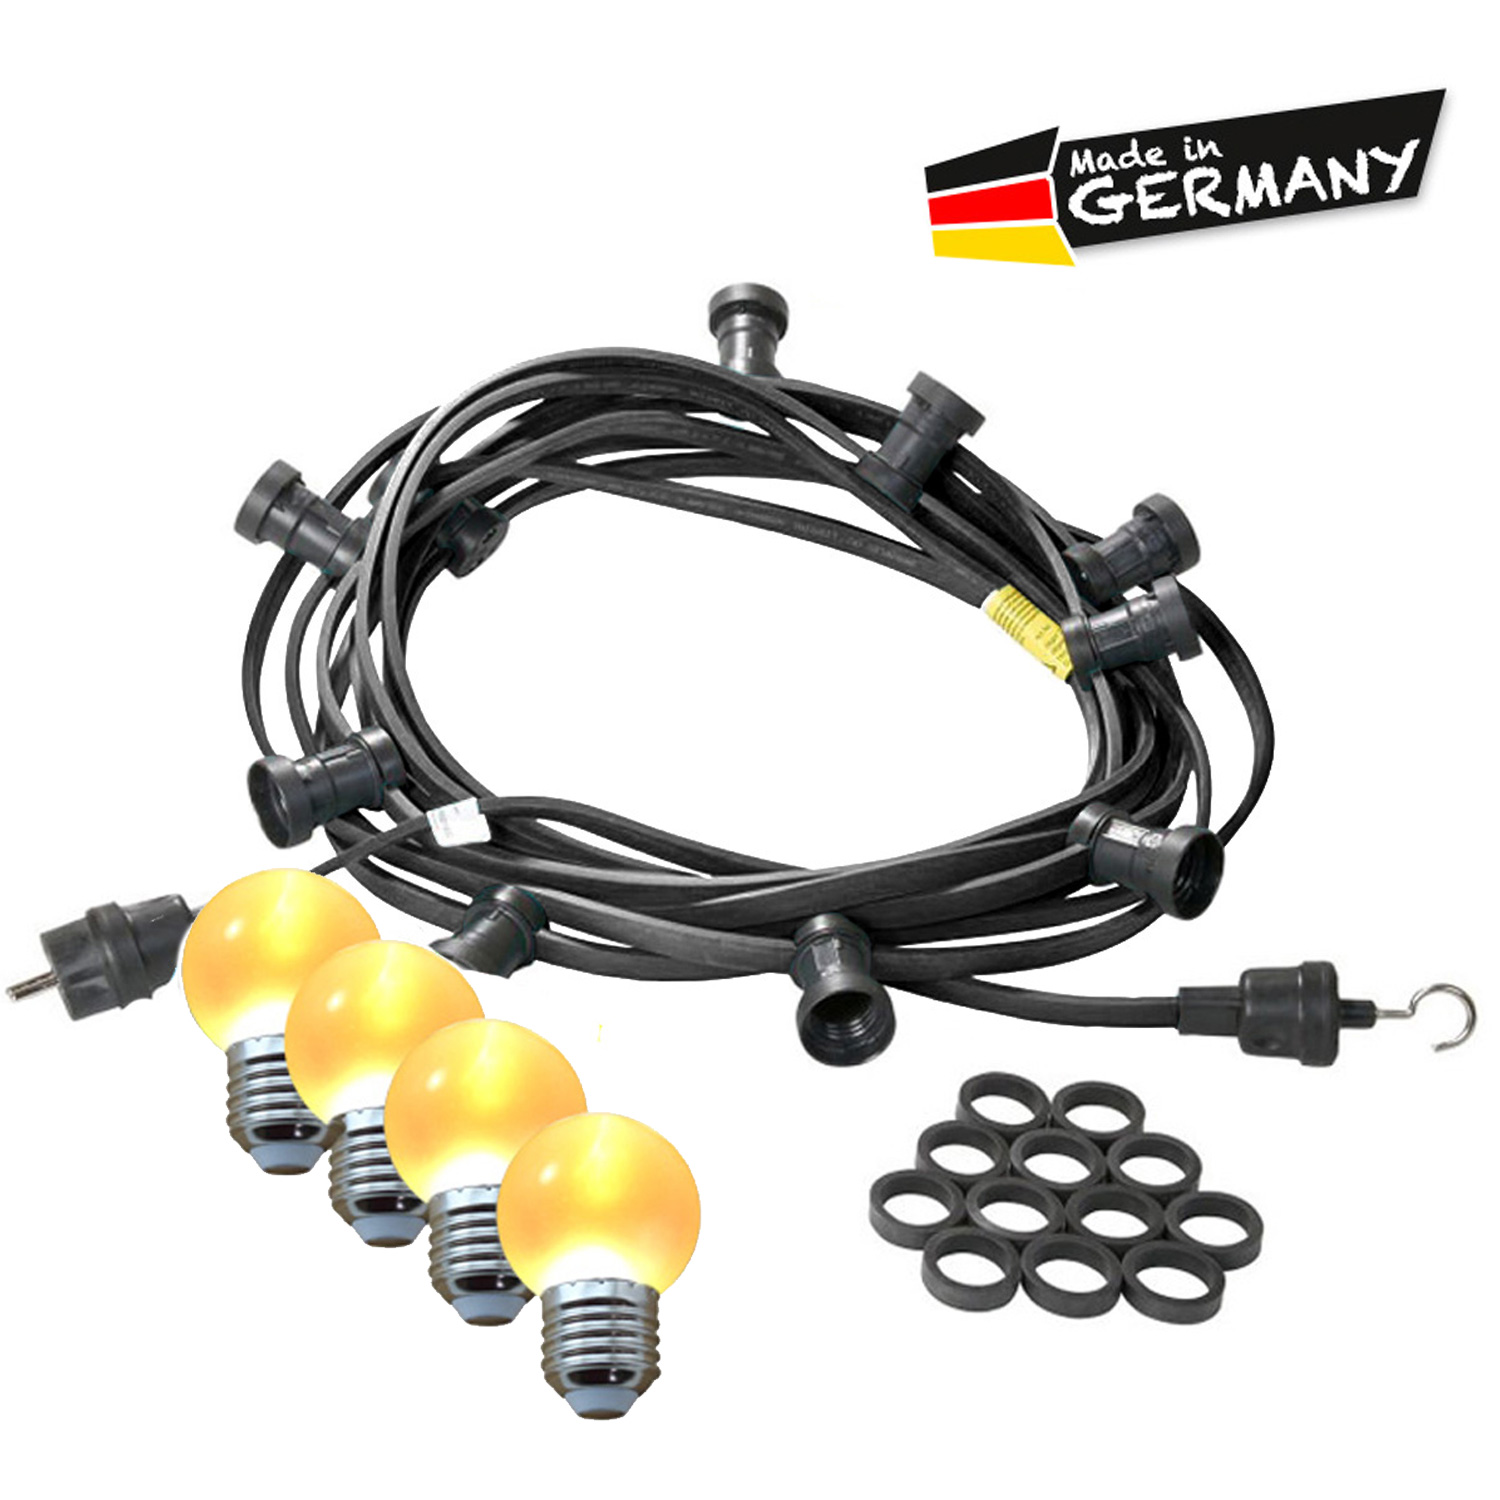 Illu-/Partylichterkette 20m - Außenlichterkette - Made in Germany - 40 x ultra-warmweiße LED Kugeln